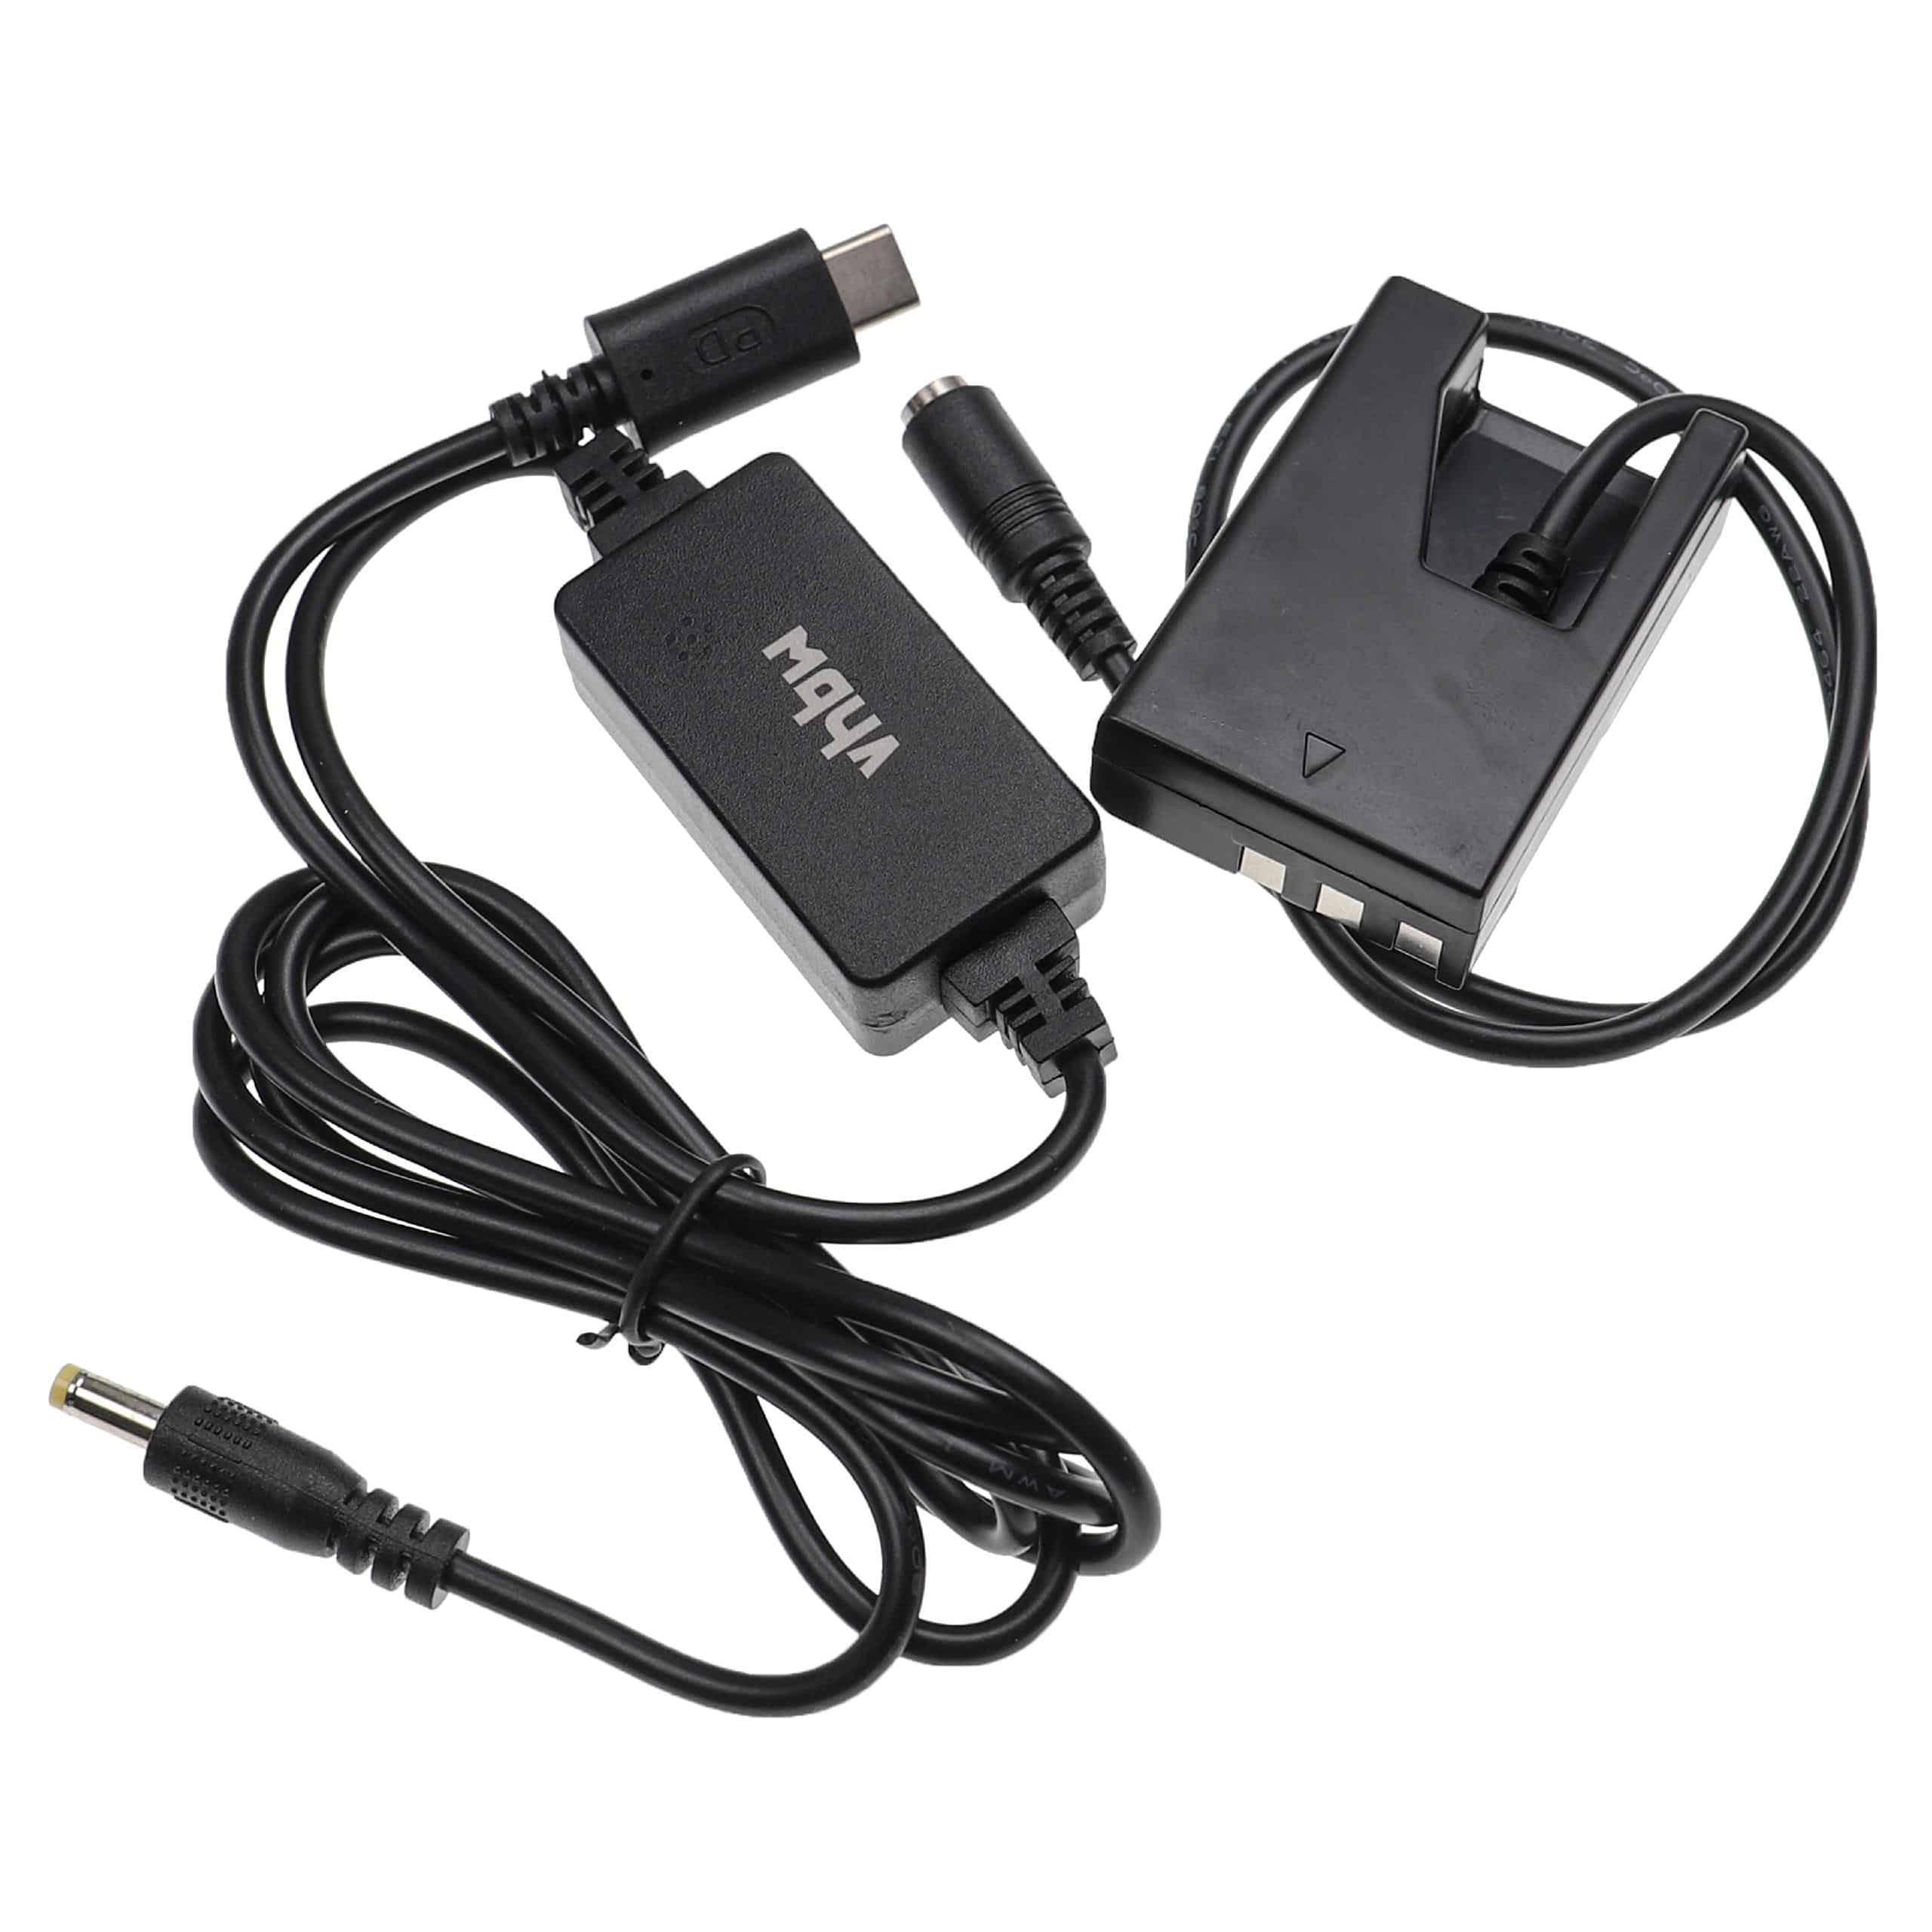 USB Netzteil als Ersatz für Nikon EH-5A, EH-5 für Kamera + DC Kuppler ersetzt Nikon EP-5